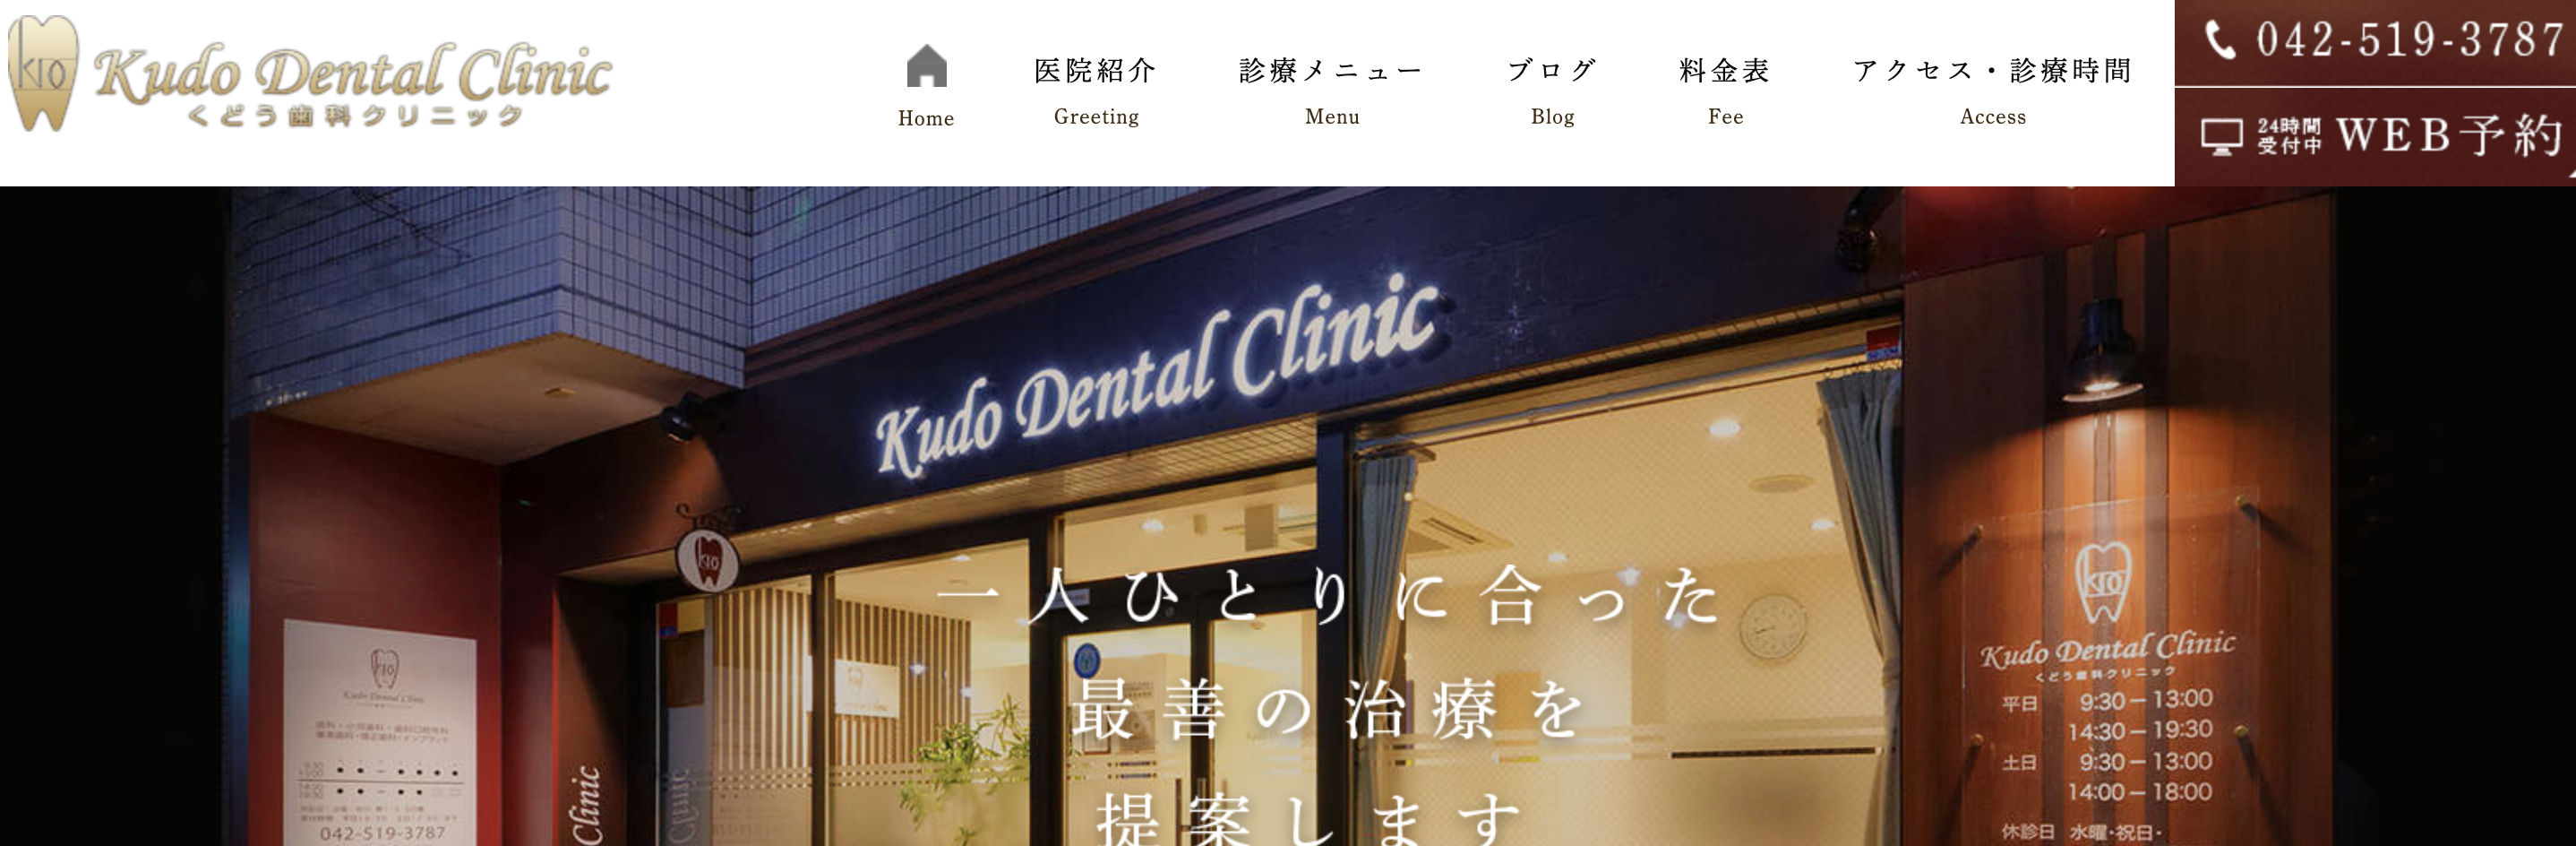 立川市で評判の歯医者おすすめ5選 くどう歯科クリニック